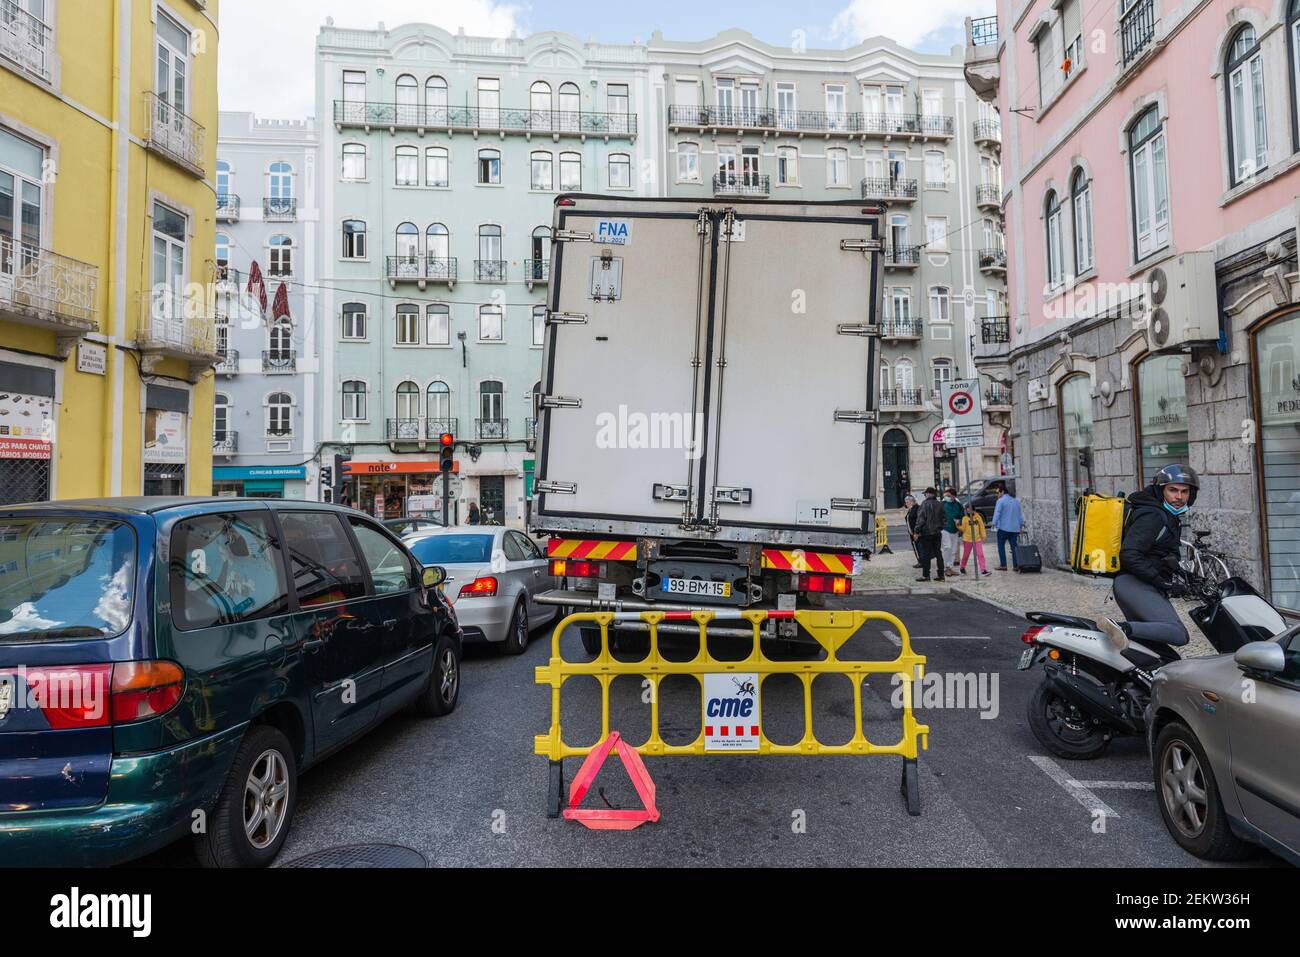 Lisbonne, 10/23/2020 - l'abattage sur Rua Cavaleiro de Oliveira immobilise  un camion étant donné que la roue avant droite a percé le trottoir. Le  chariot a été arrêté au feu qui donne